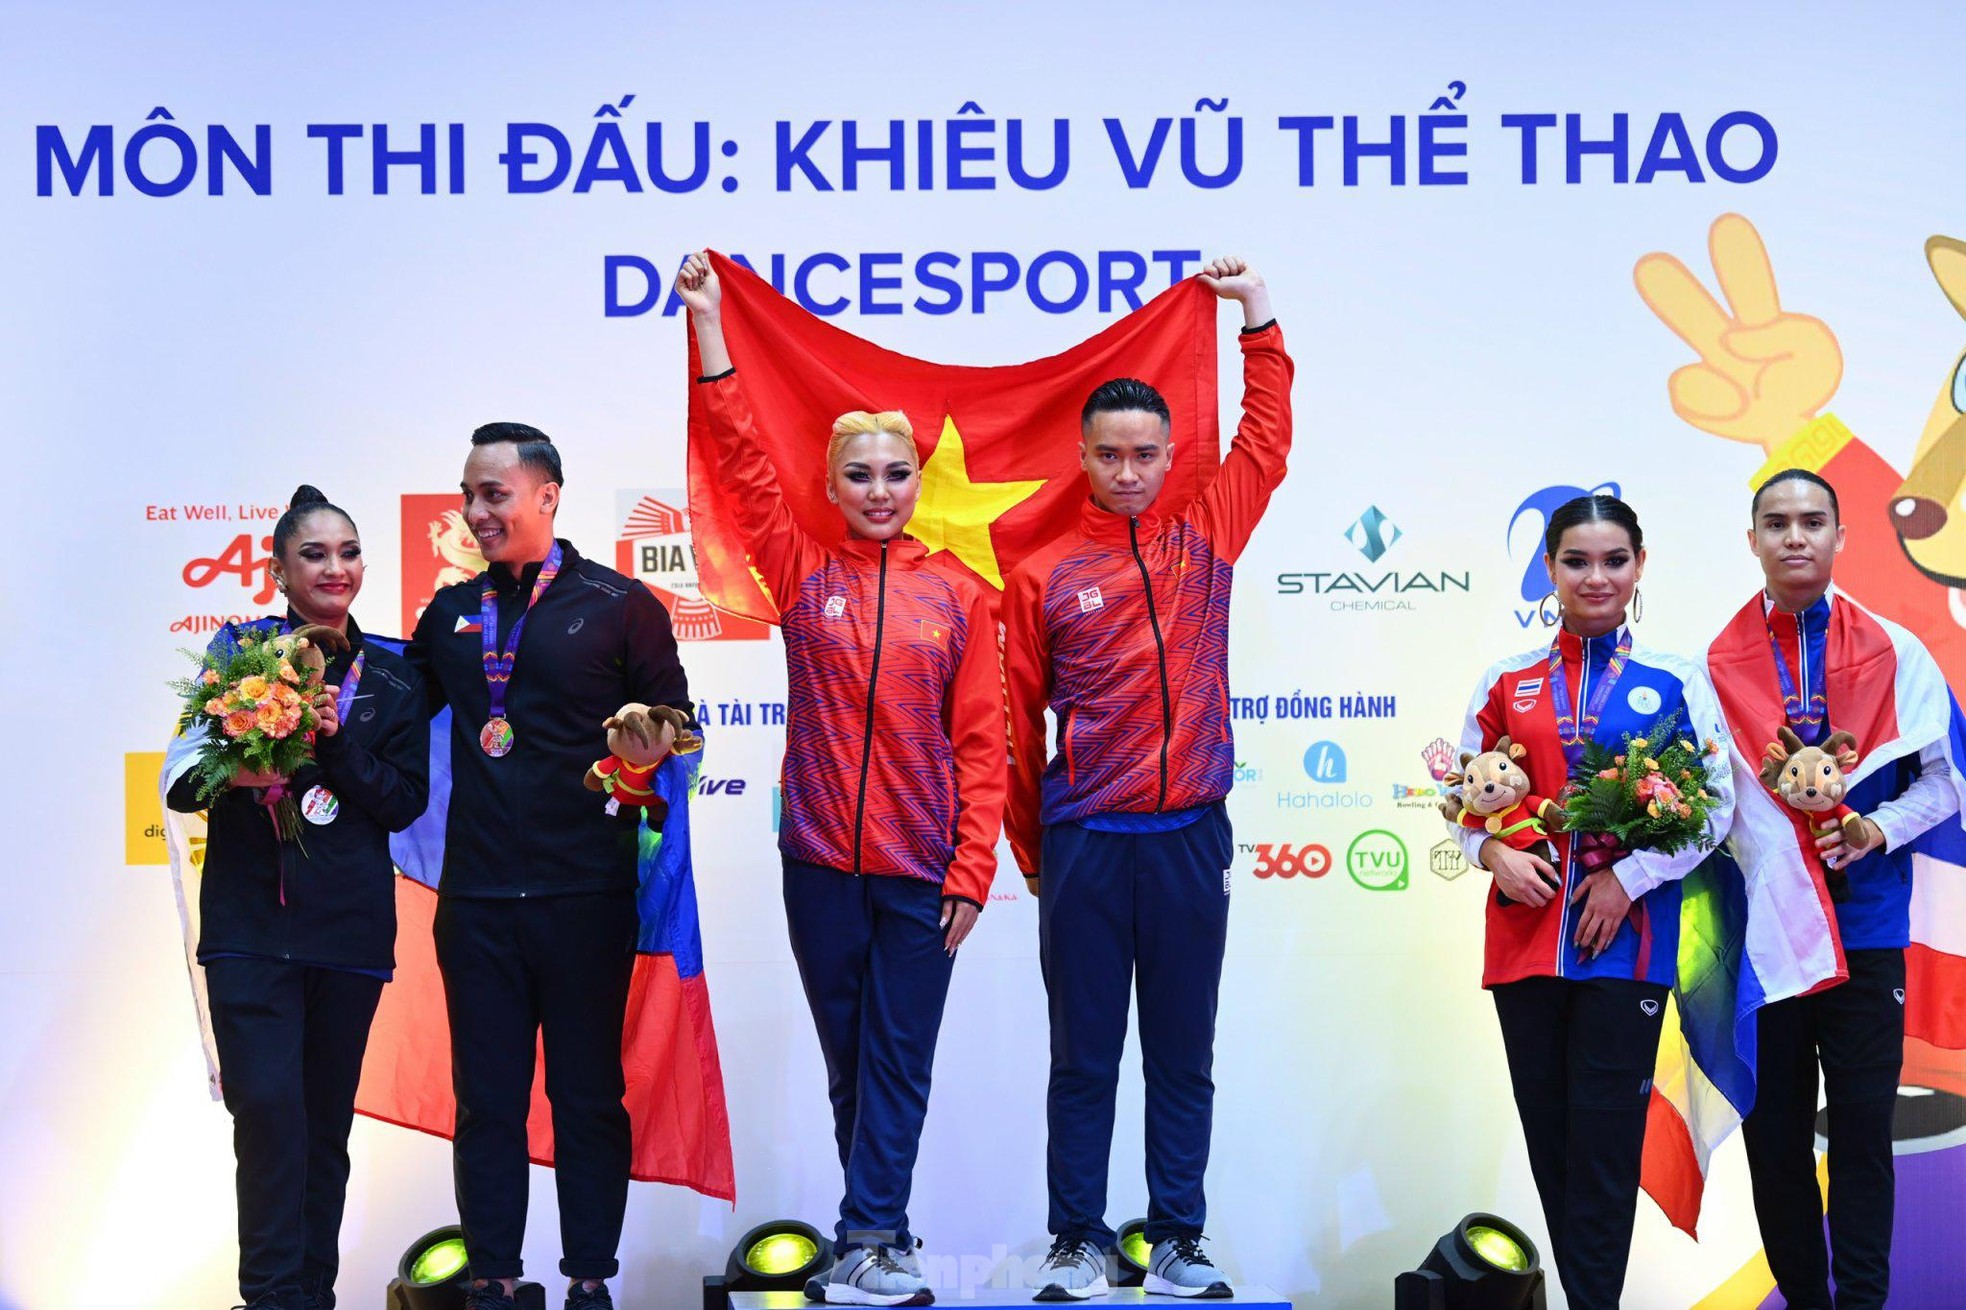 Ngắm vũ điệu mê hồn giúp Dancesport Việt Nam giành 5 HCV SEA Games 31 - Ảnh 14.